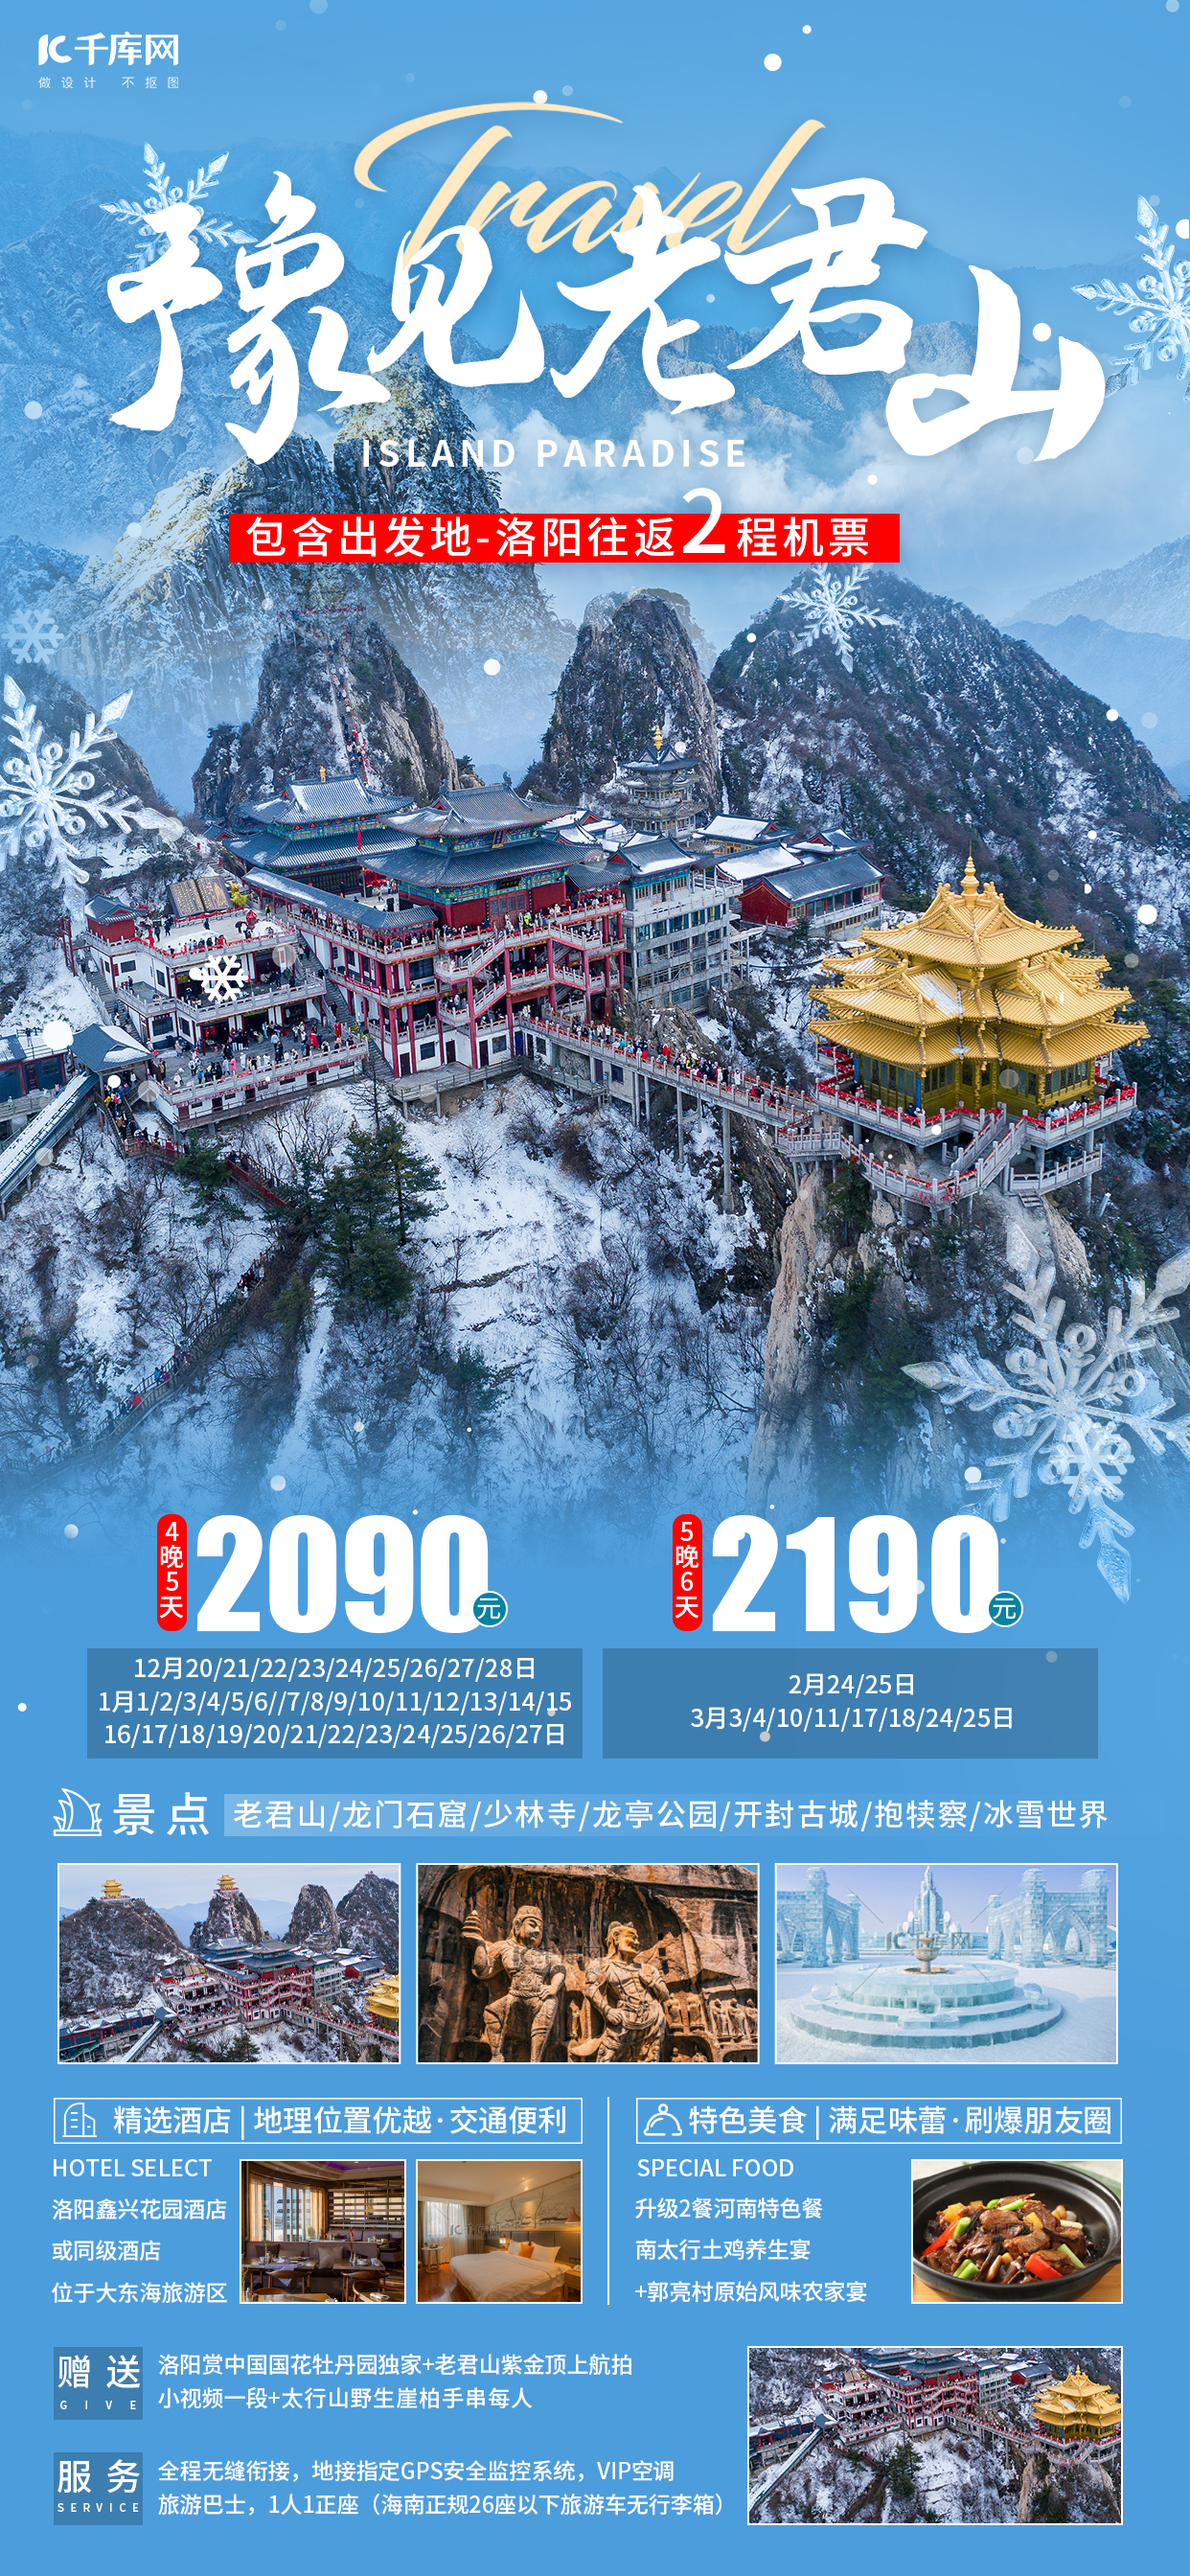 豫见老君山冬天旅游蓝色旅行社广告宣传海报图片